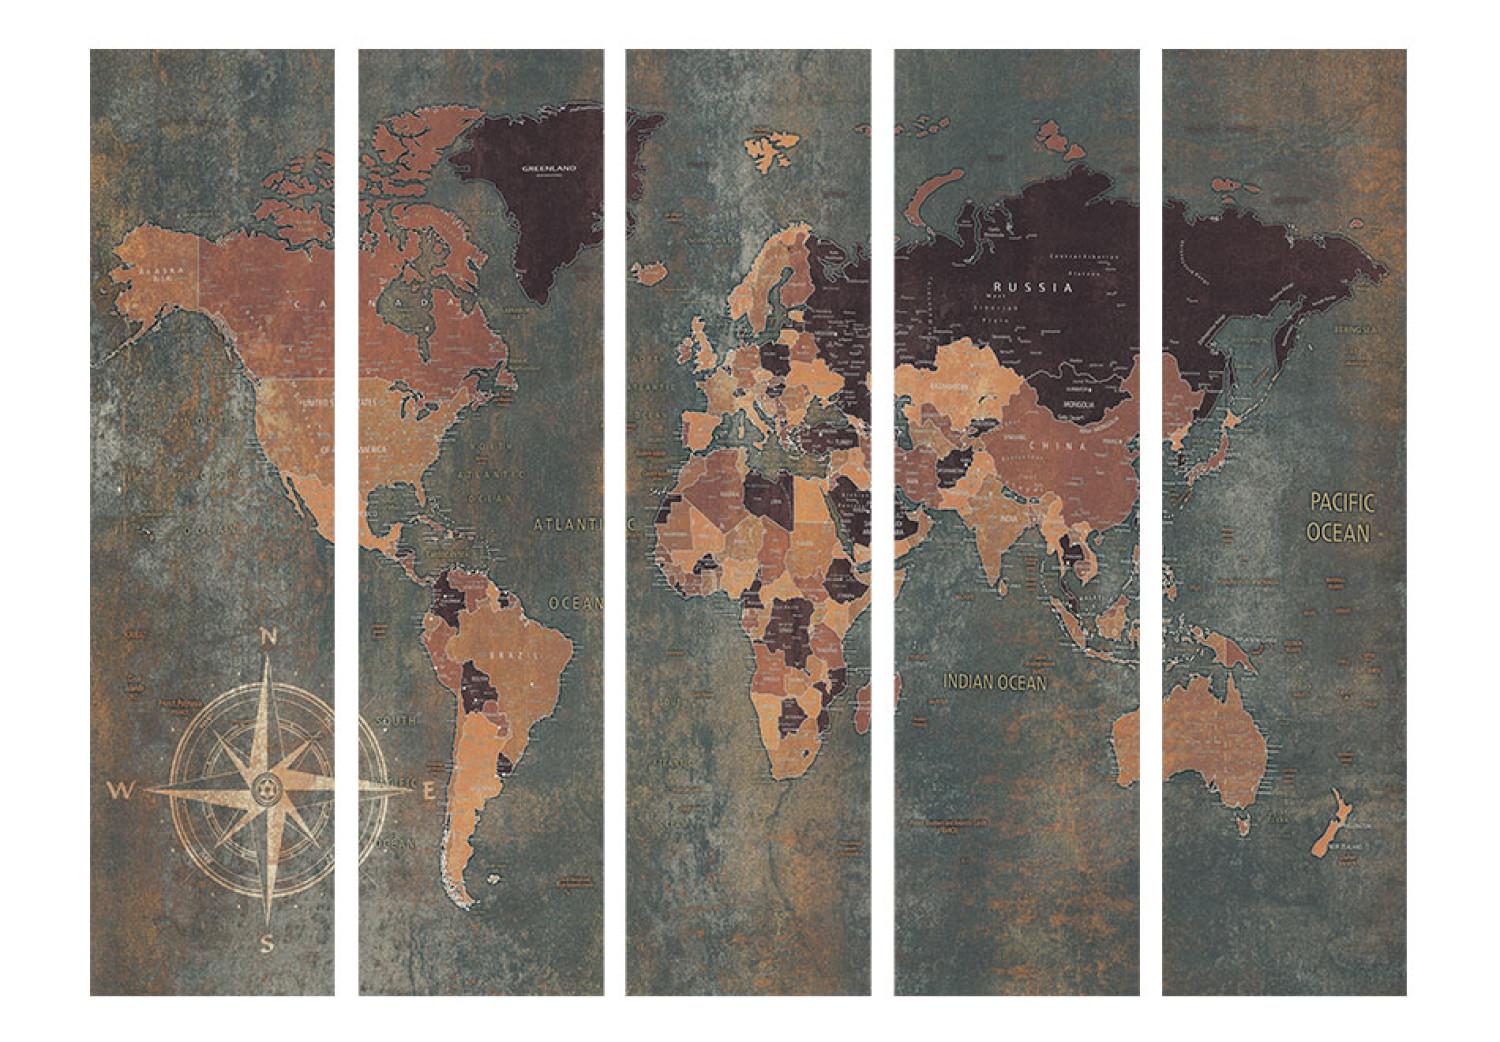 Biombo decorativo Mapa mundial retro (5 partes): continentes y océanos grises